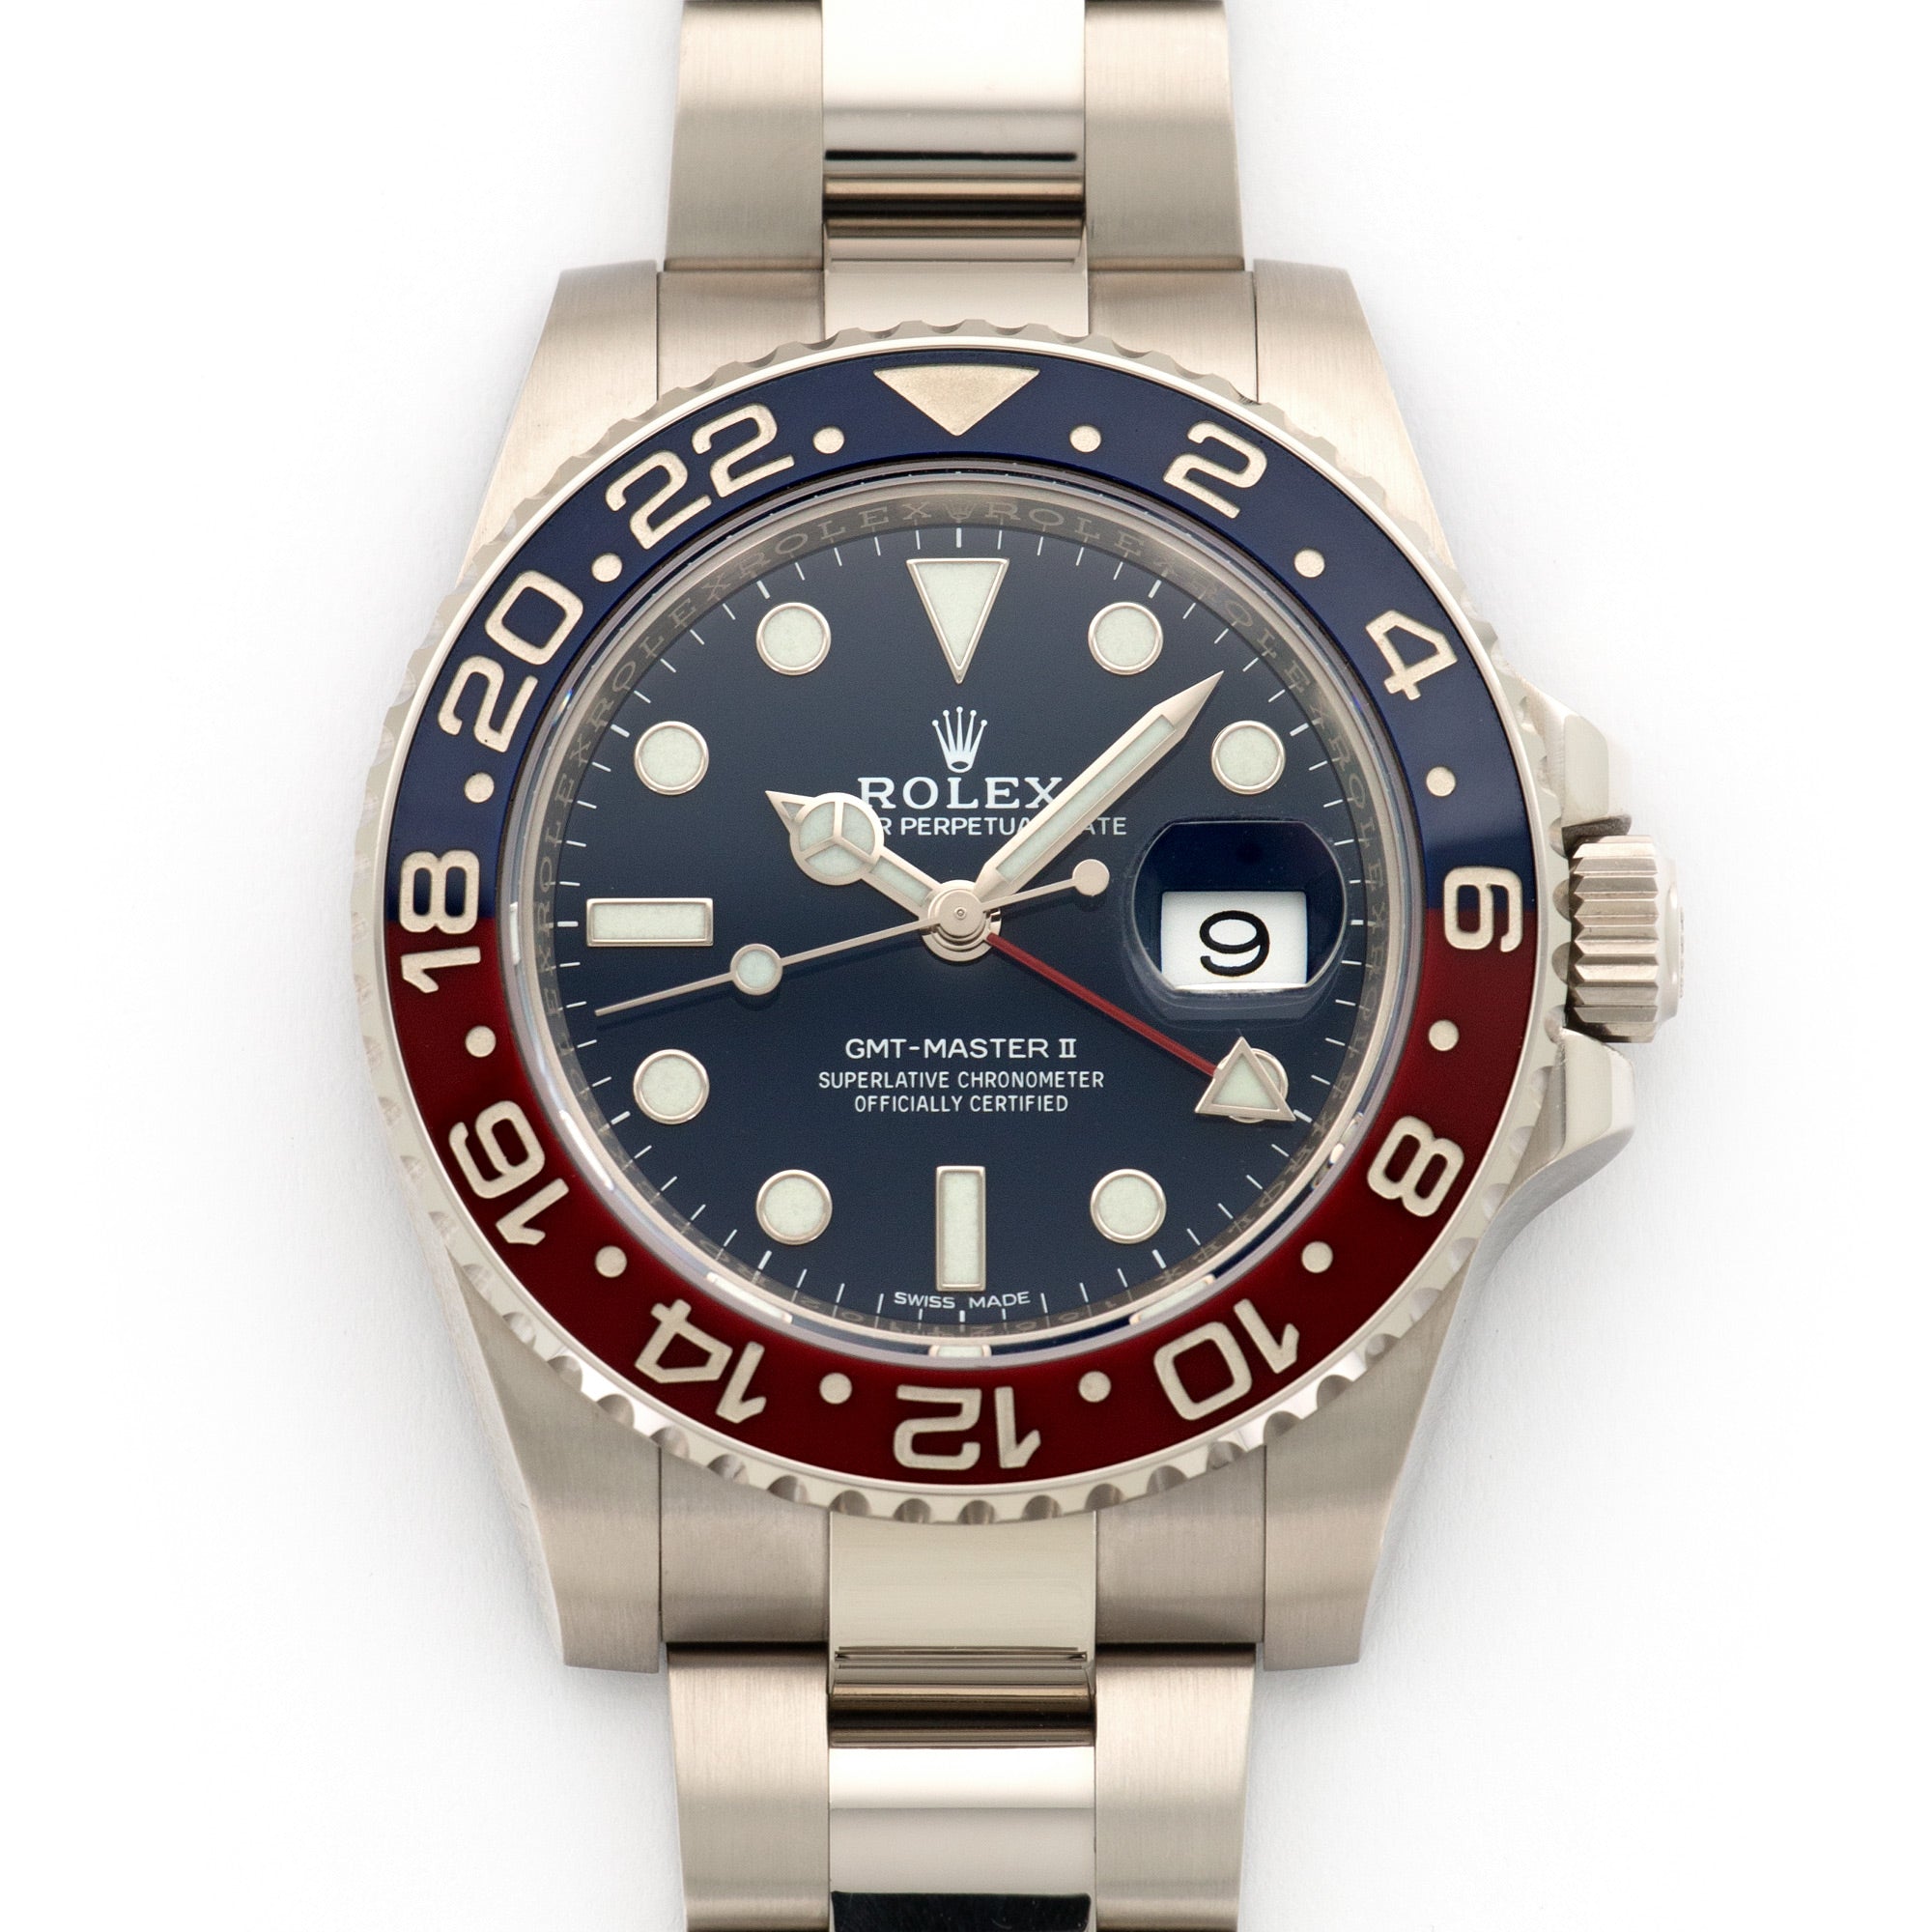 Rolex - Rolex White Gold GMT-Master II Pepsi Watch Ref. 116719 - The Keystone Watches